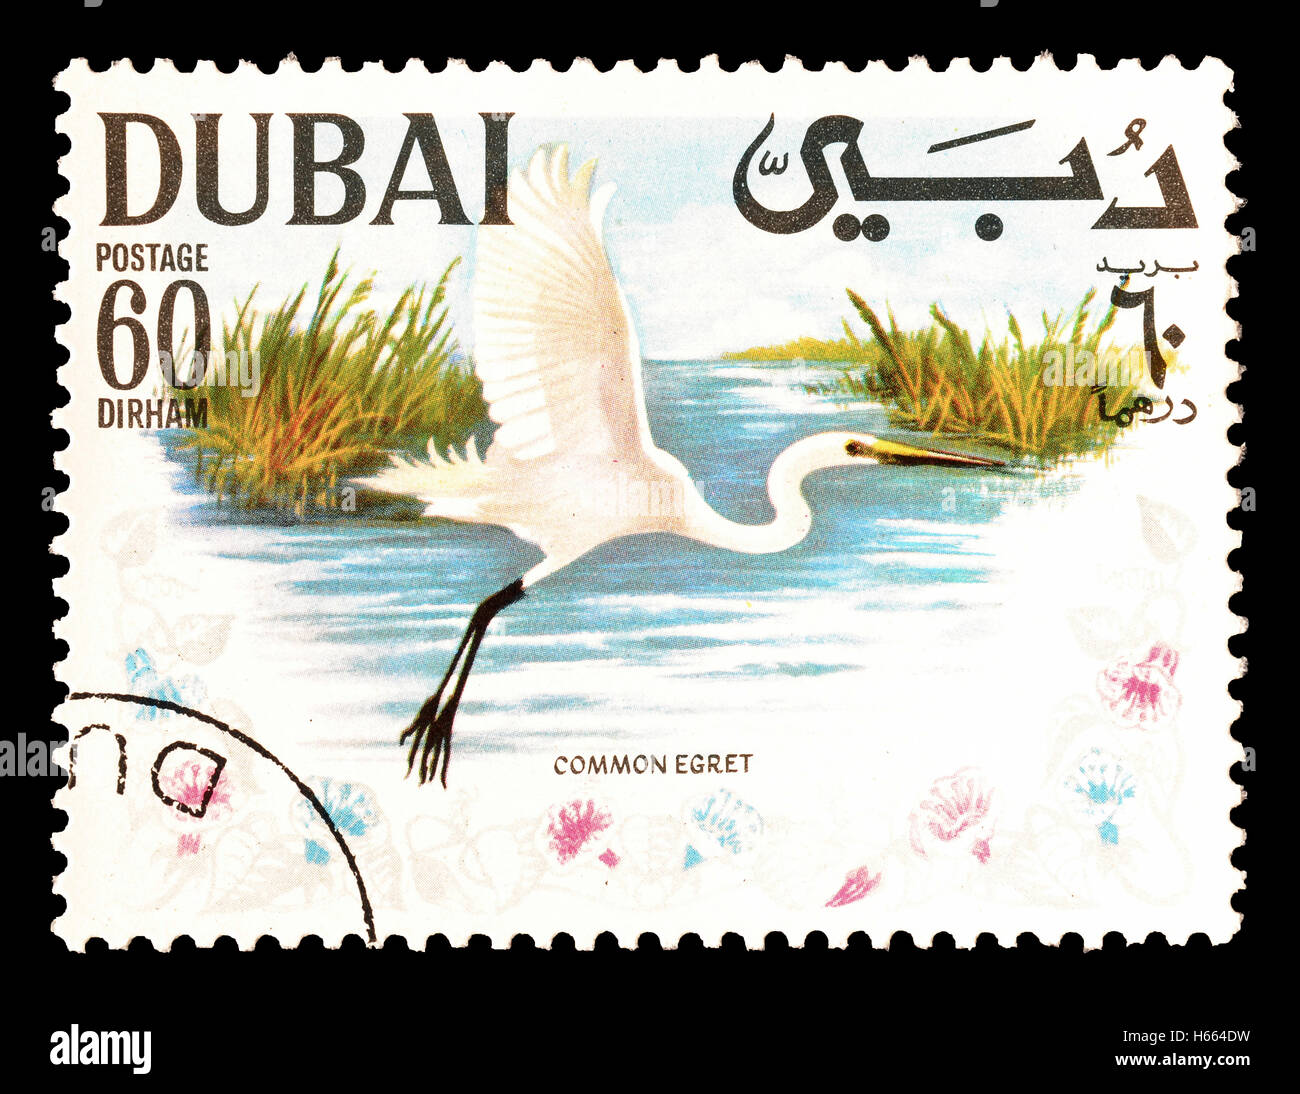 Dubai stamp immagini e fotografie stock ad alta risoluzione - Alamy